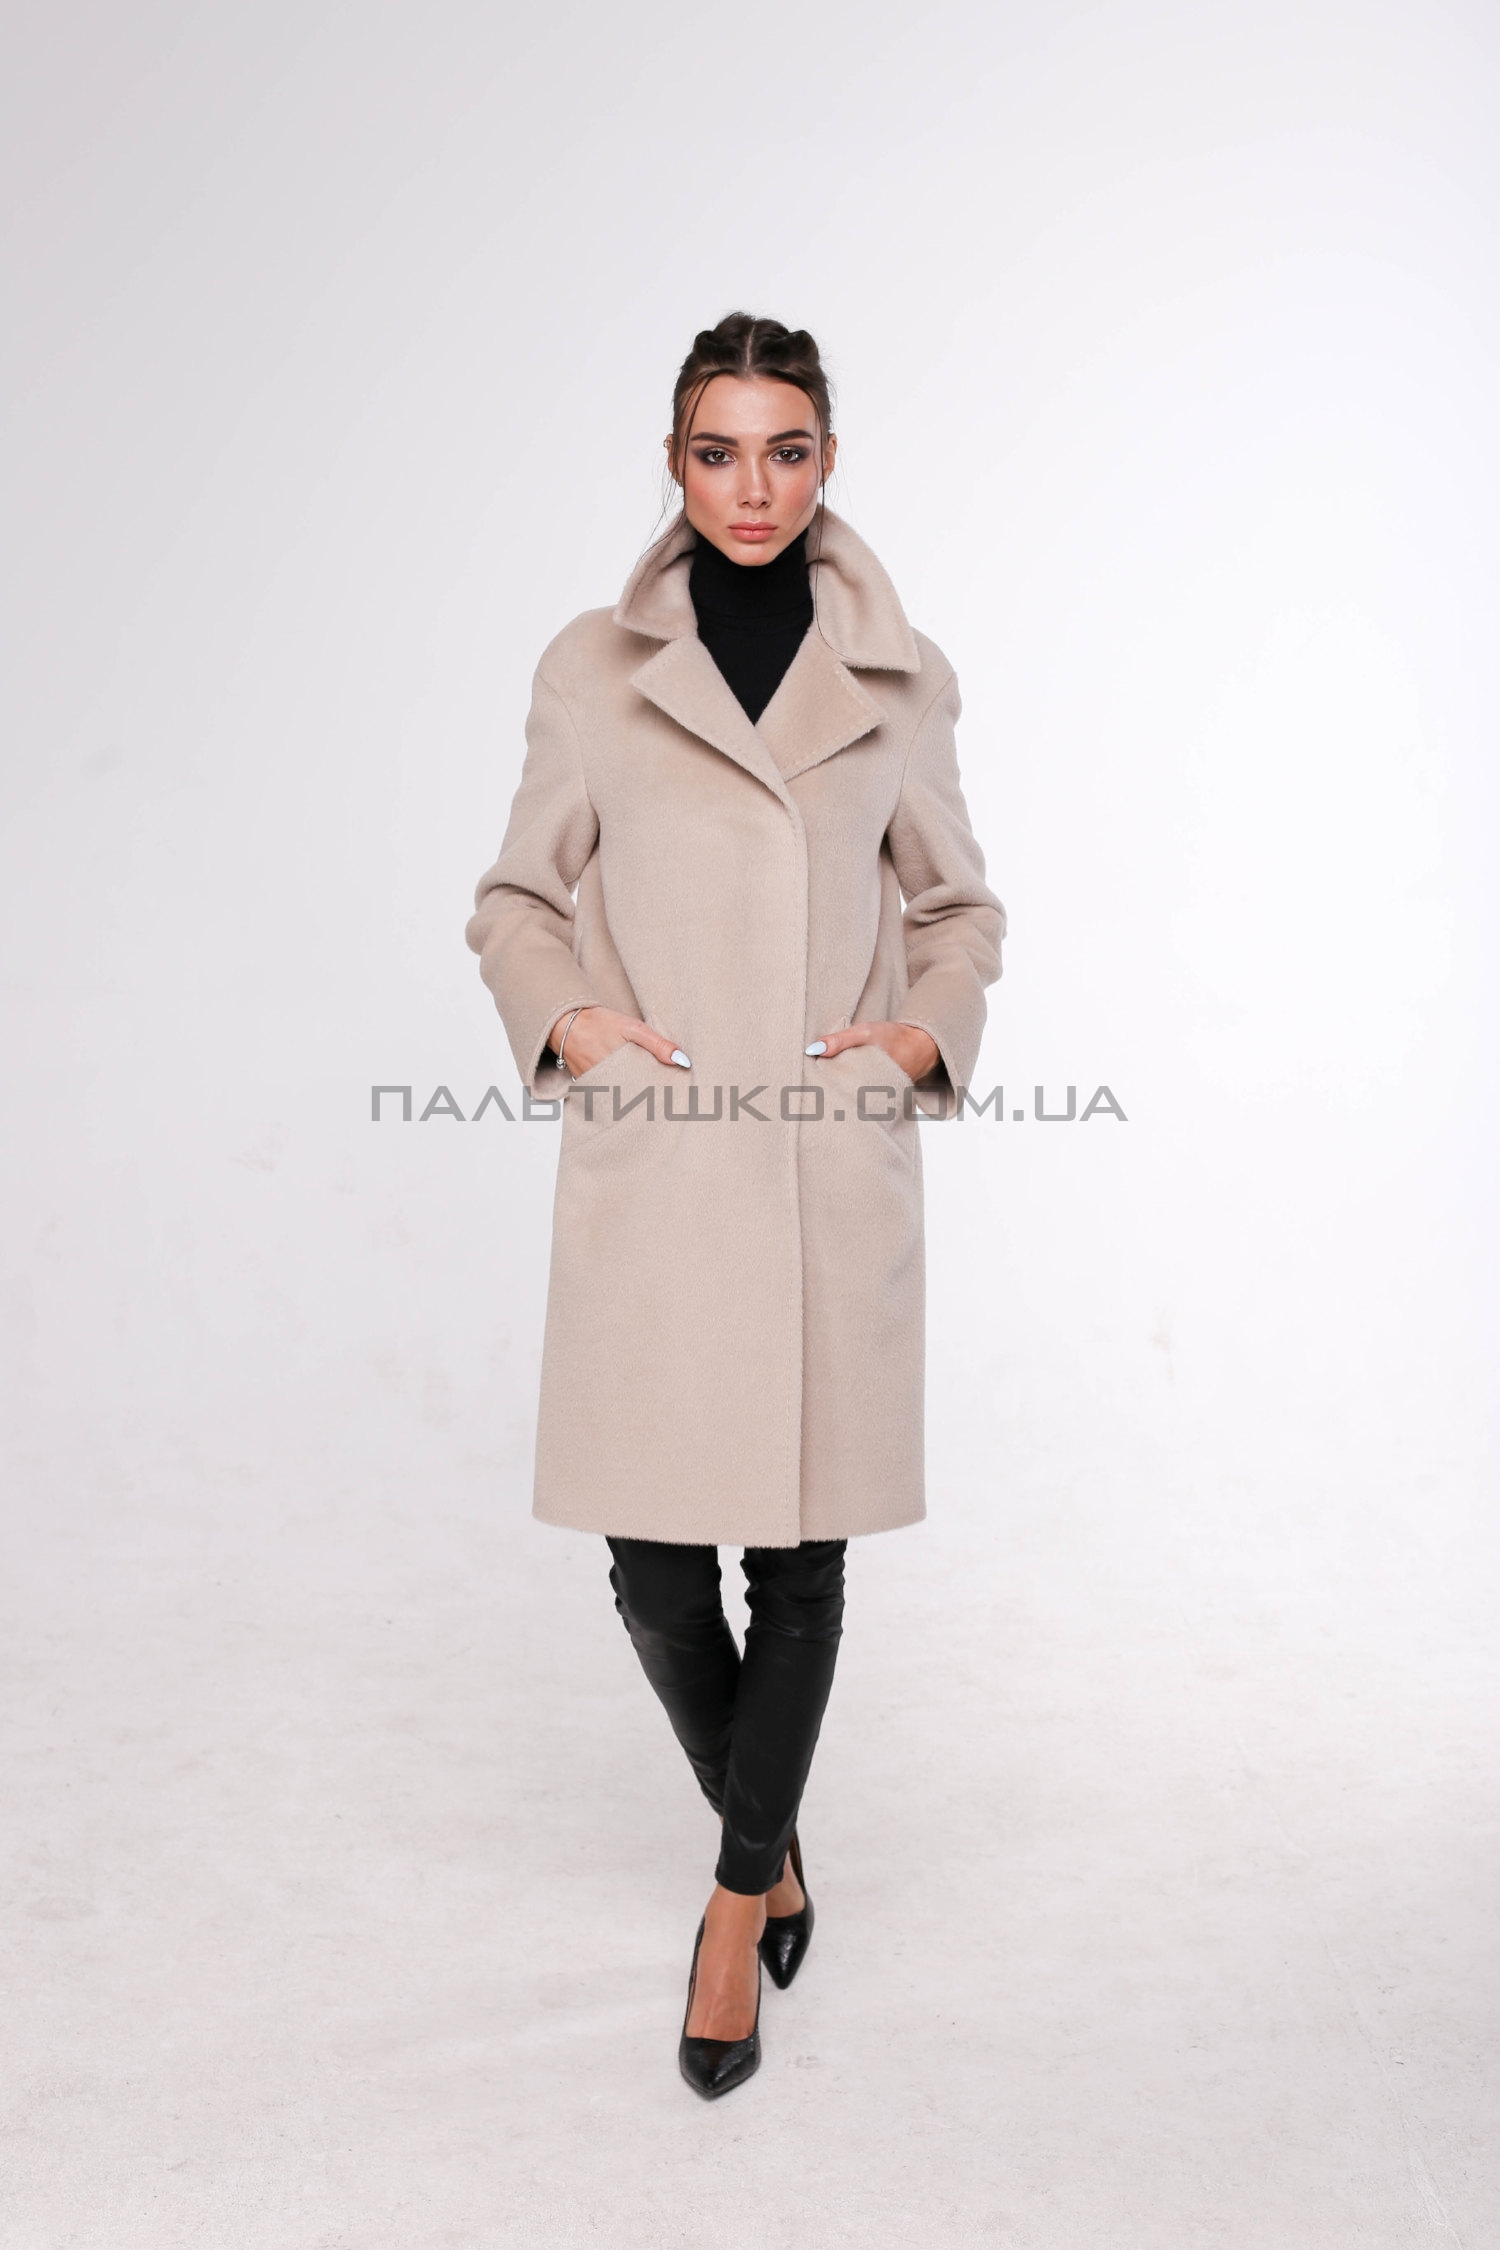  Женское пальто № 115